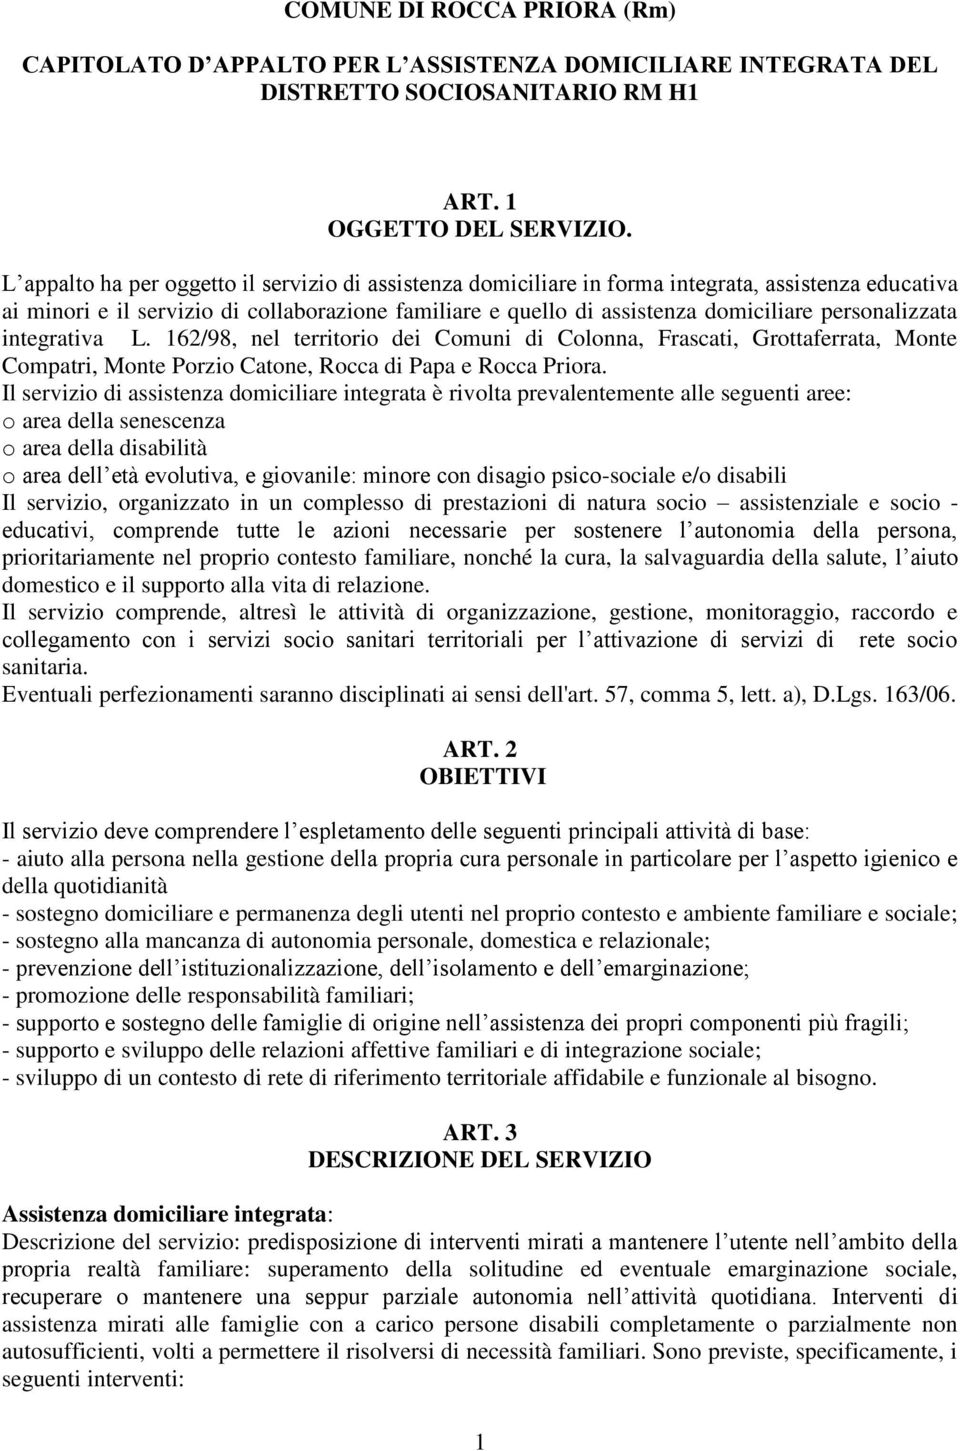 personalizzata integrativa L. 162/98, nel territorio dei Comuni di Colonna, Frascati, Grottaferrata, Monte Compatri, Monte Porzio Catone, Rocca di Papa e Rocca Priora.